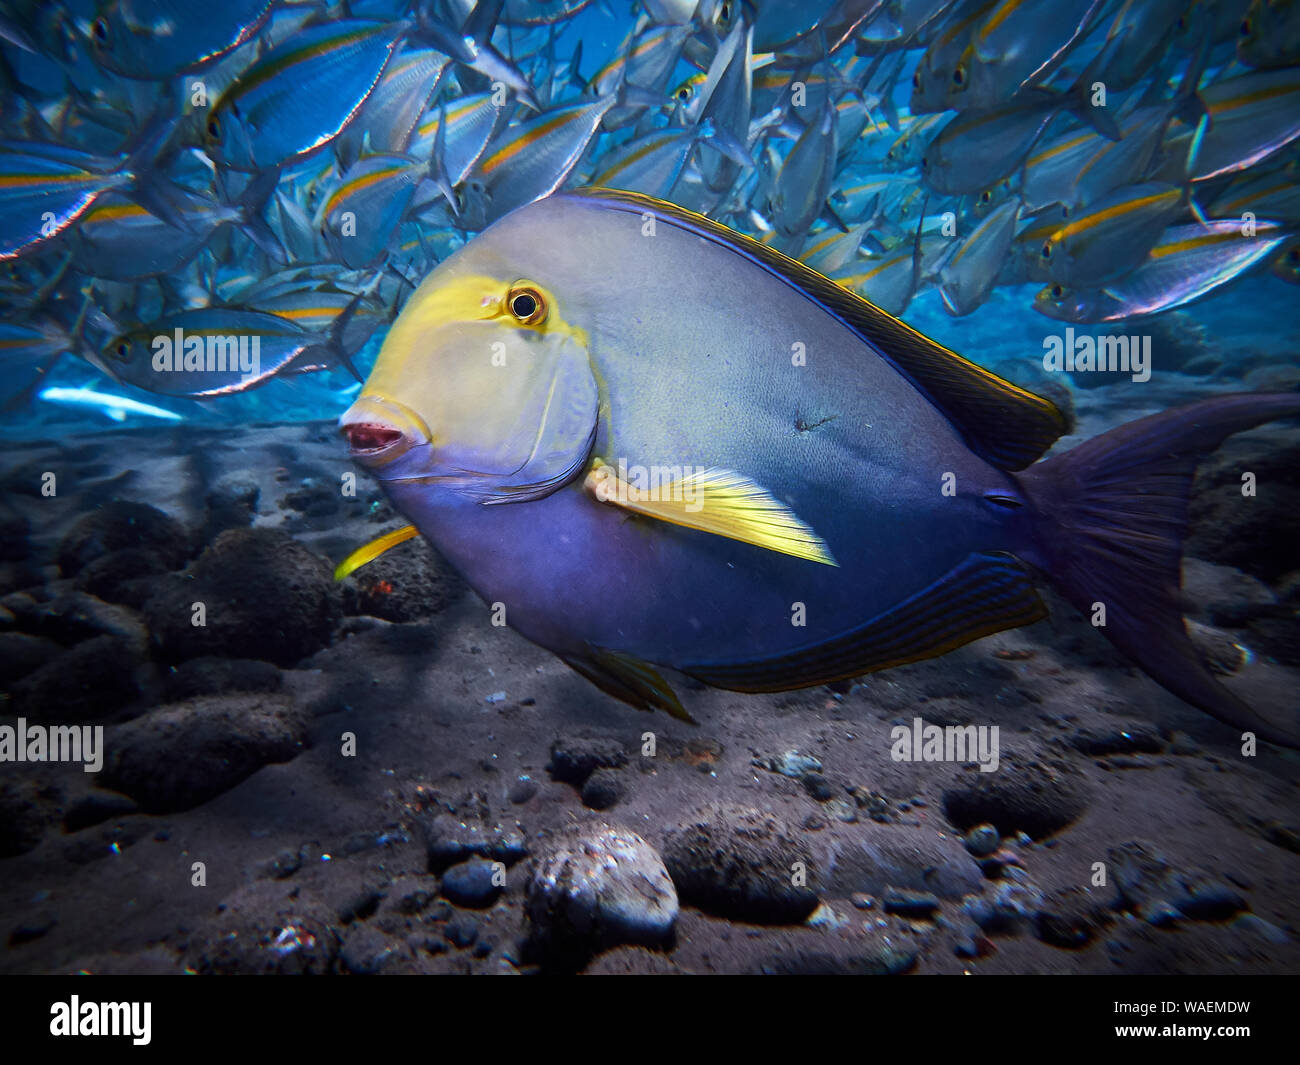 Blauer Fisch mit einer Schule der kleine Fische Stockfotografie - Alamy